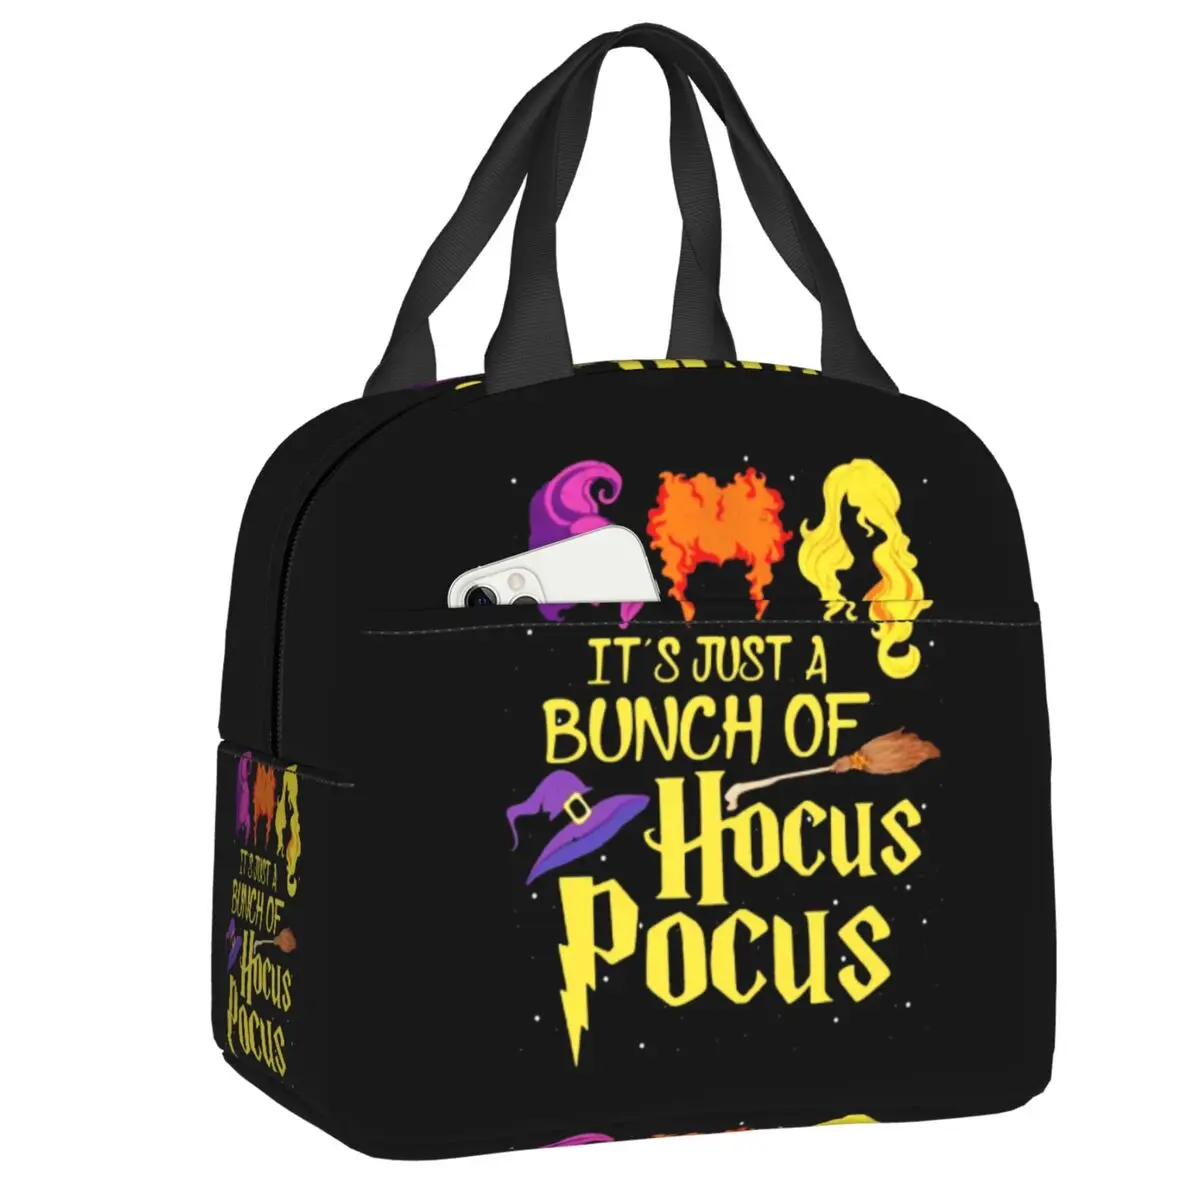 Pocus Hocus С цитатами на Хэллоуин, сумка для ланча, Термоохладитель, изолированный ланч-бокс для женщин, детей, работы, контейнер для еды для пикника